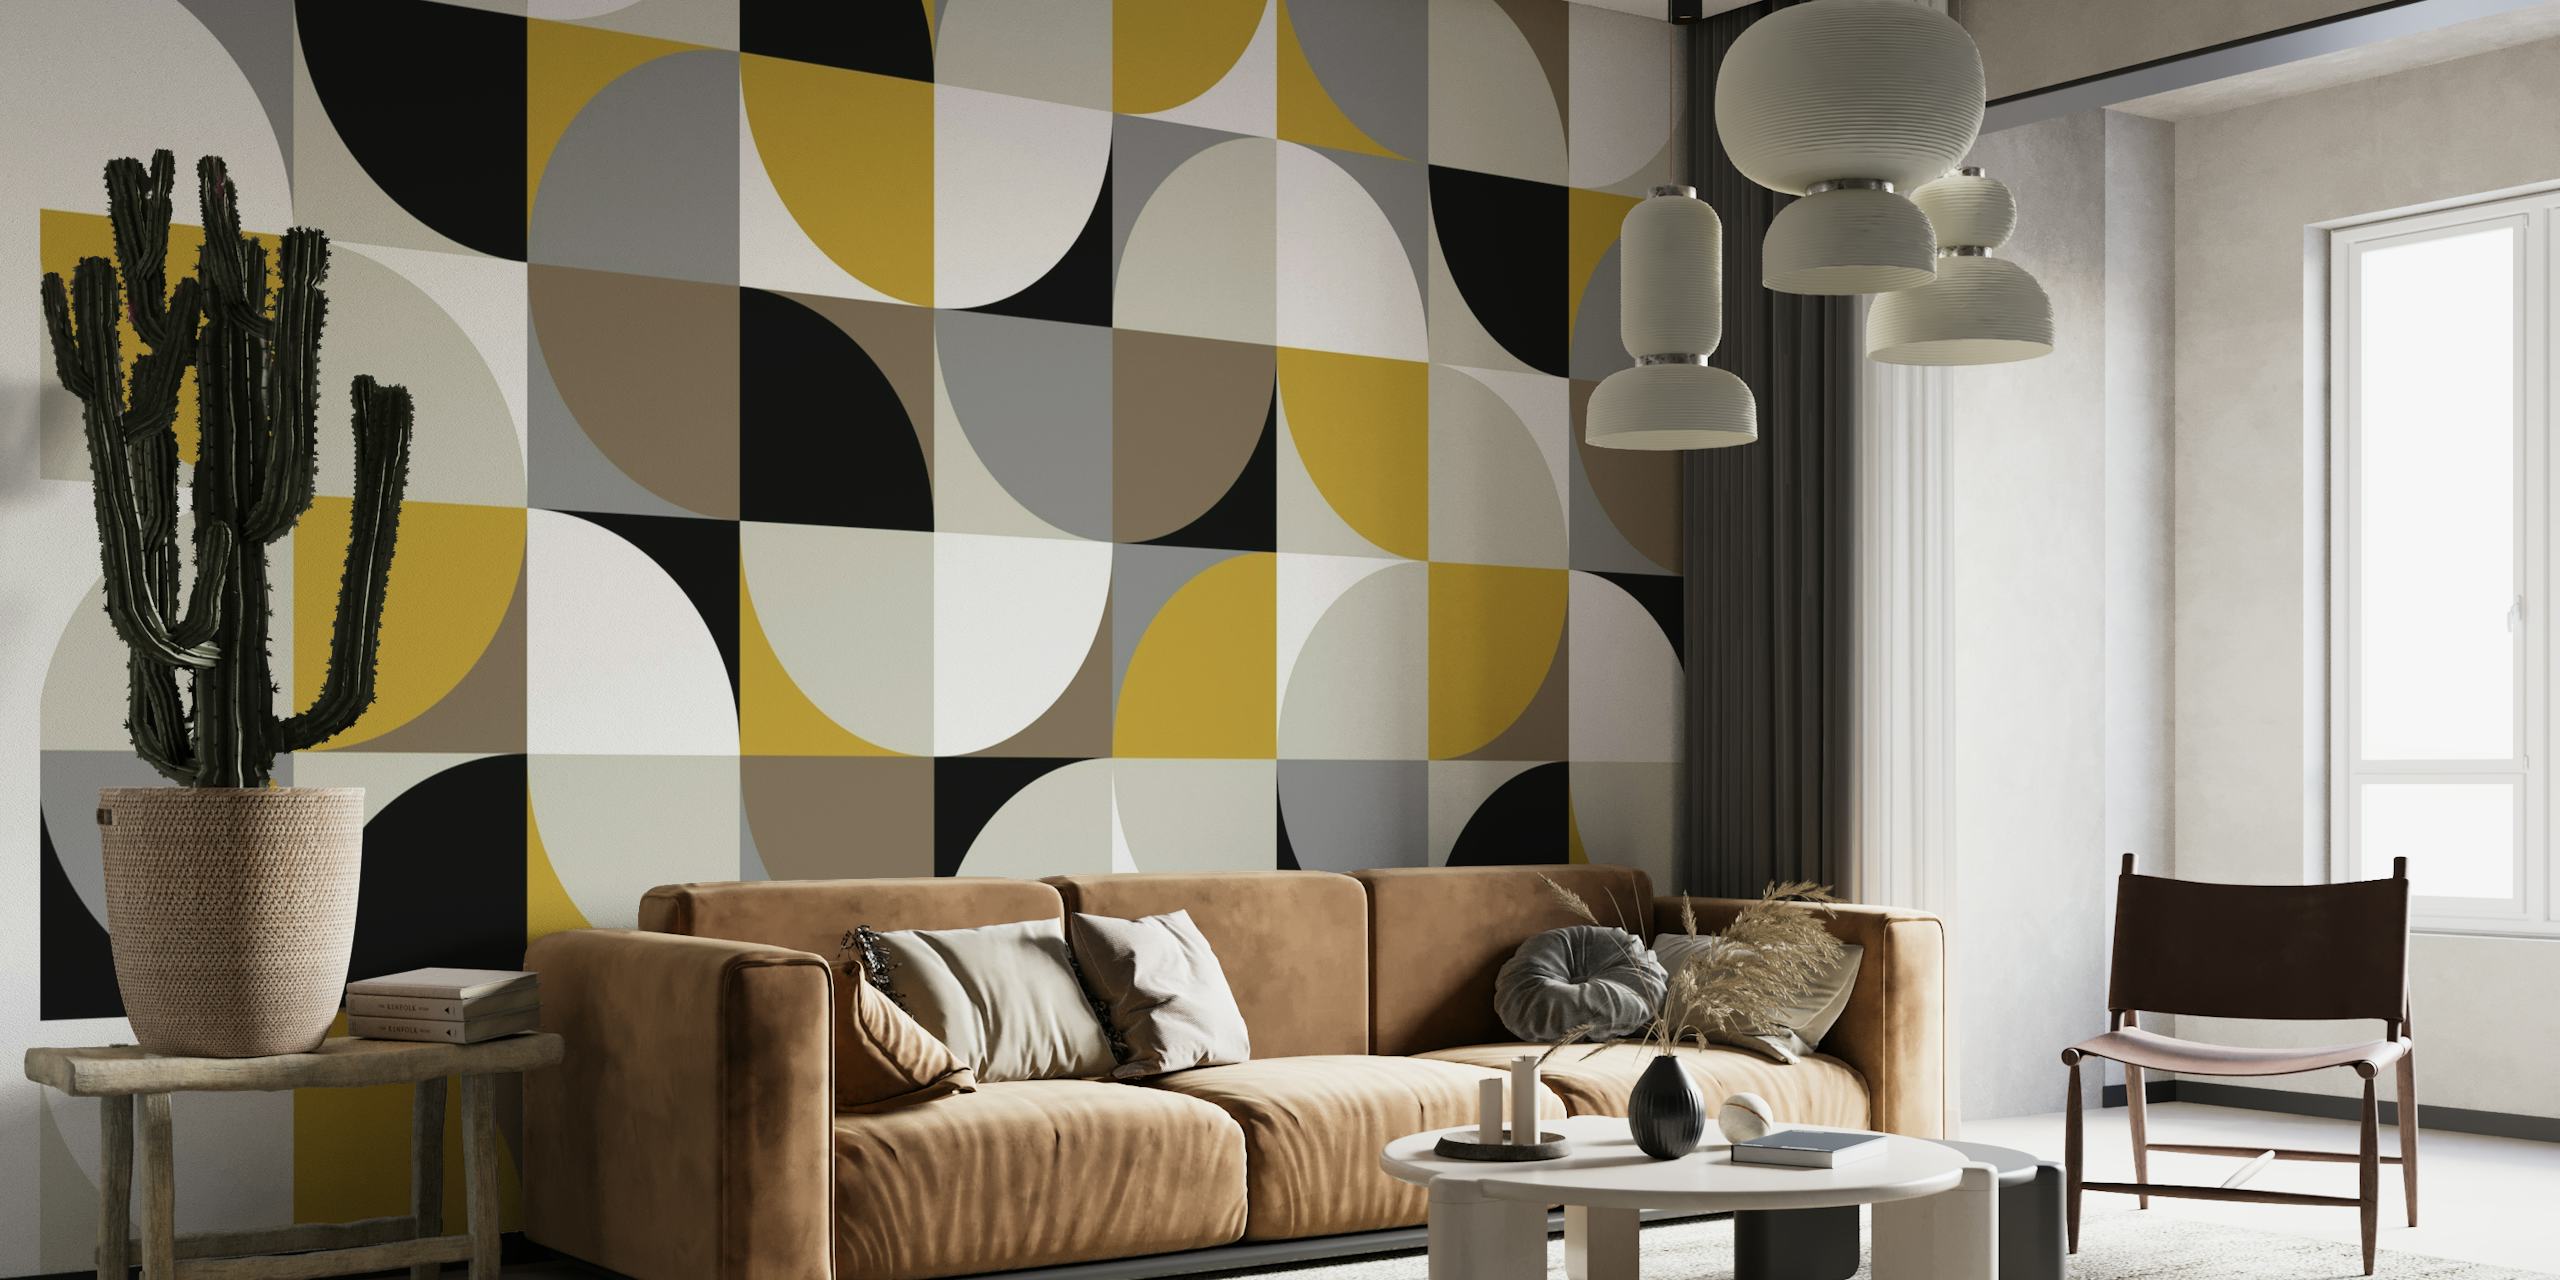 Retro mod firkanter design i sort, hvid, grå og guld til et vægmaleri